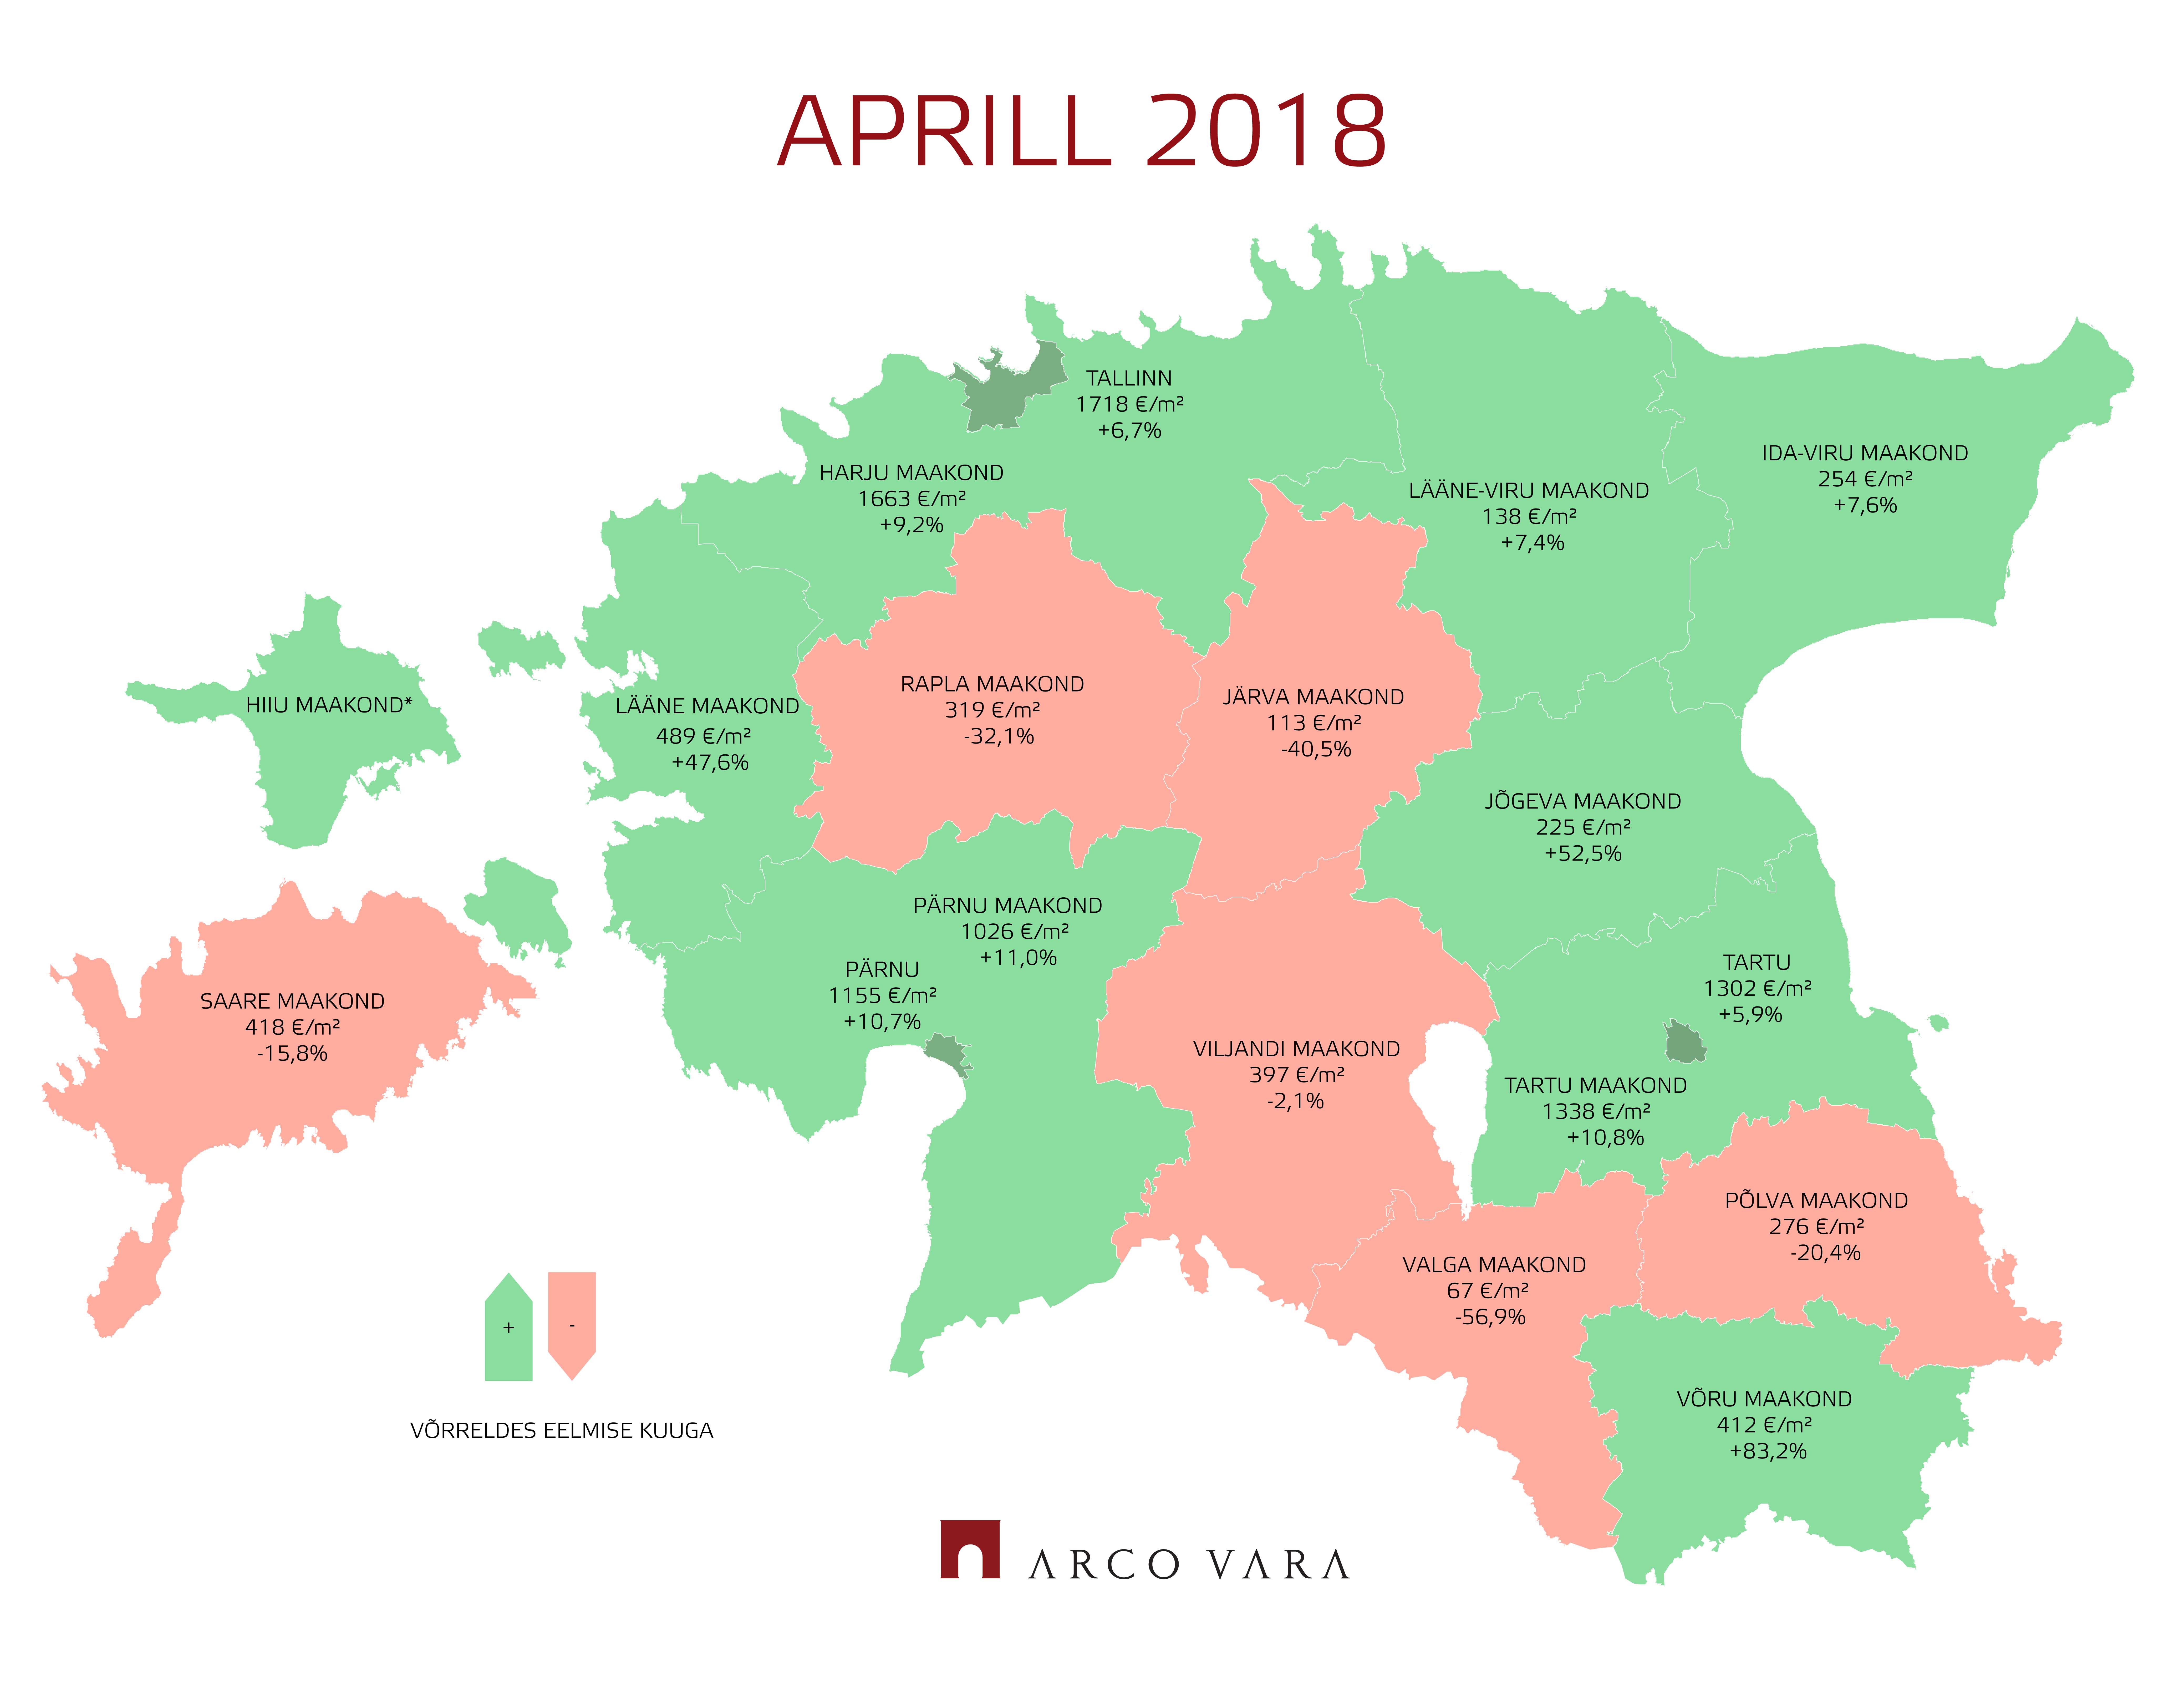 Eesti kinnisvaraturu aprillikuu lühiülevaade